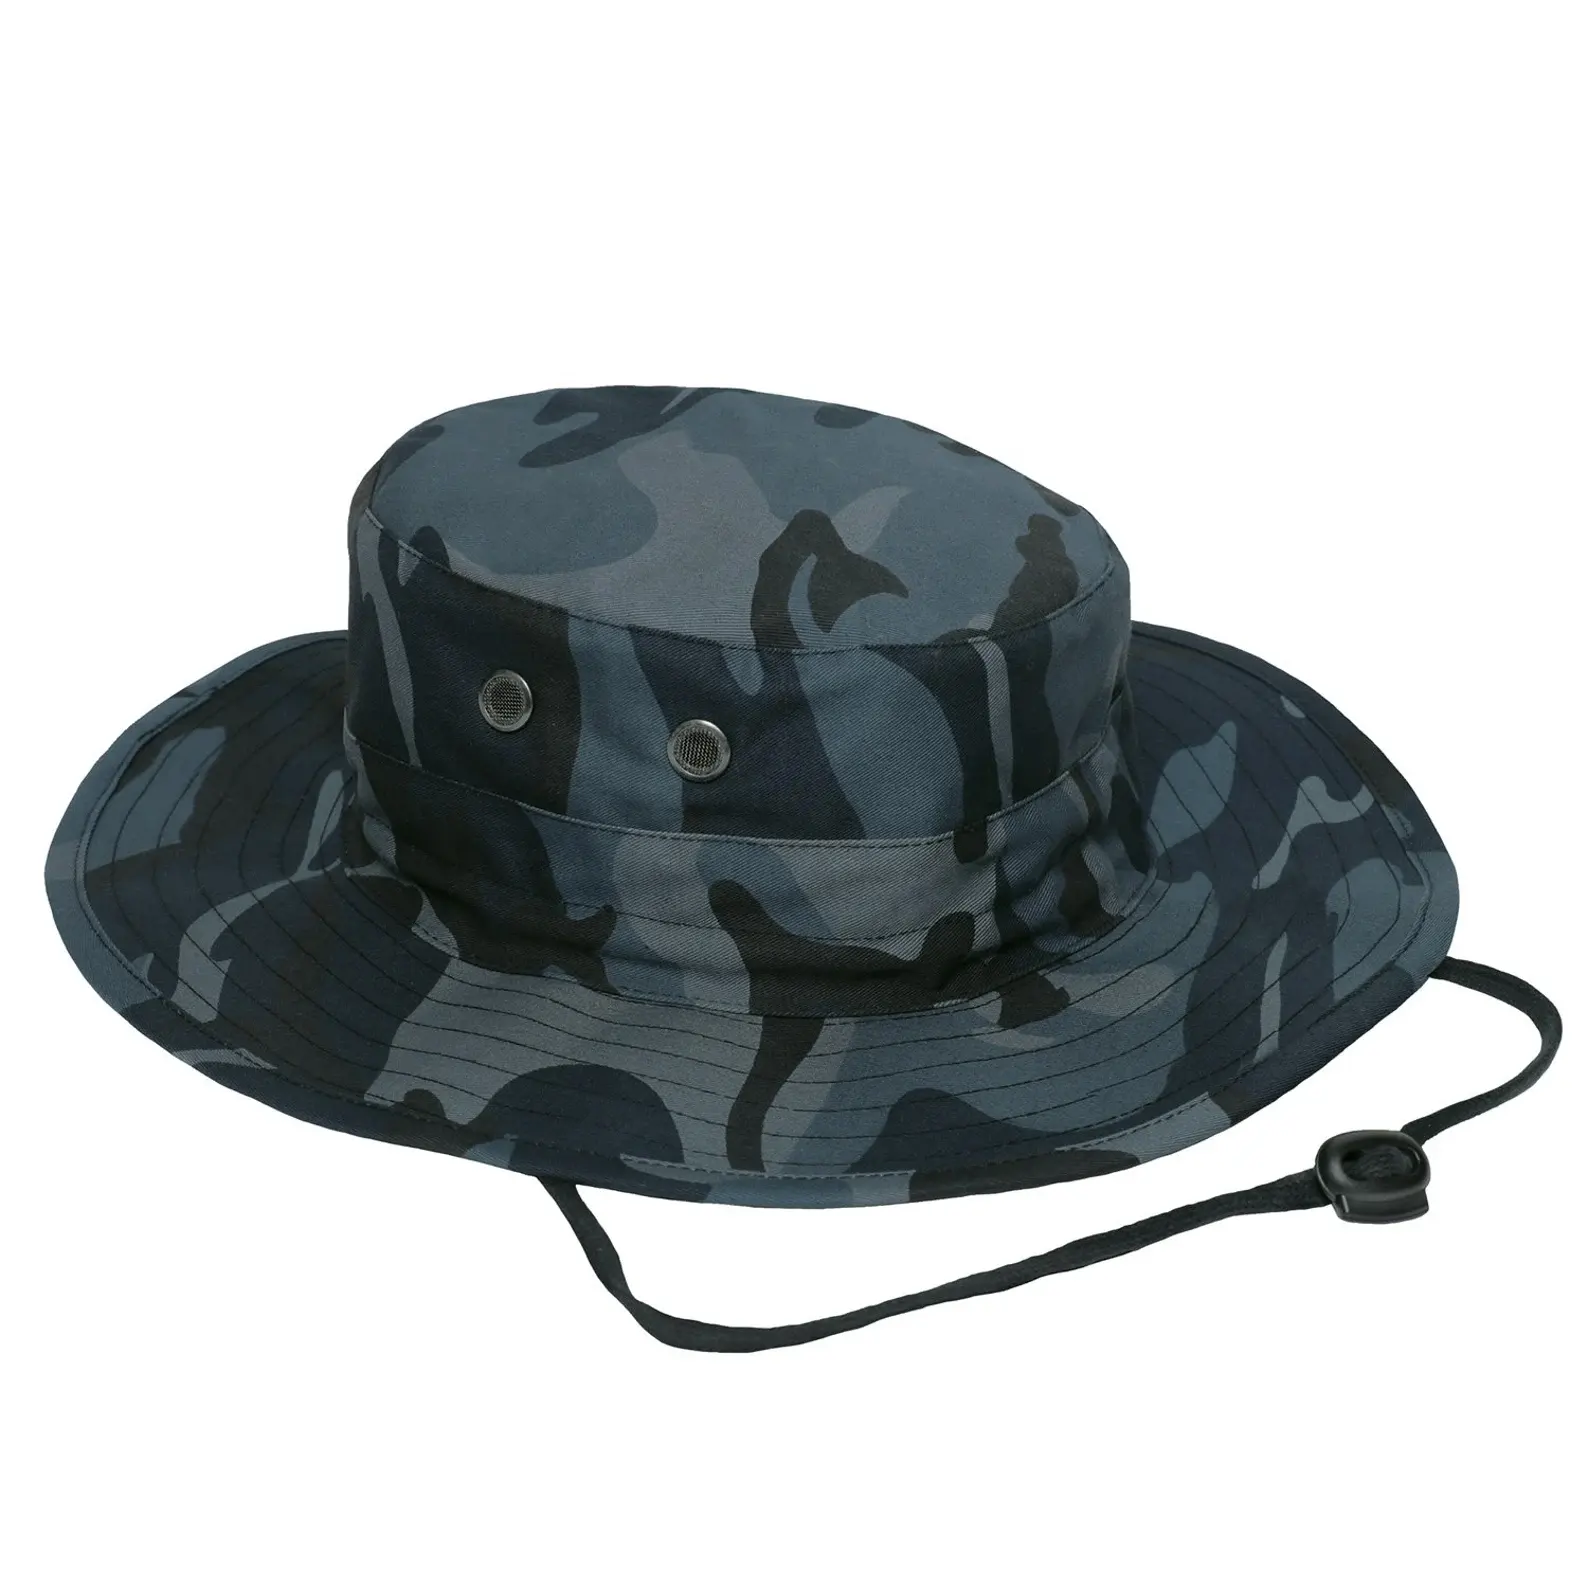 Cappello mimetico a secchiello regolabile sottogola e cordino elastico con chiusura a cordoncino sul retro dell'orlo 4 Ventss schermato